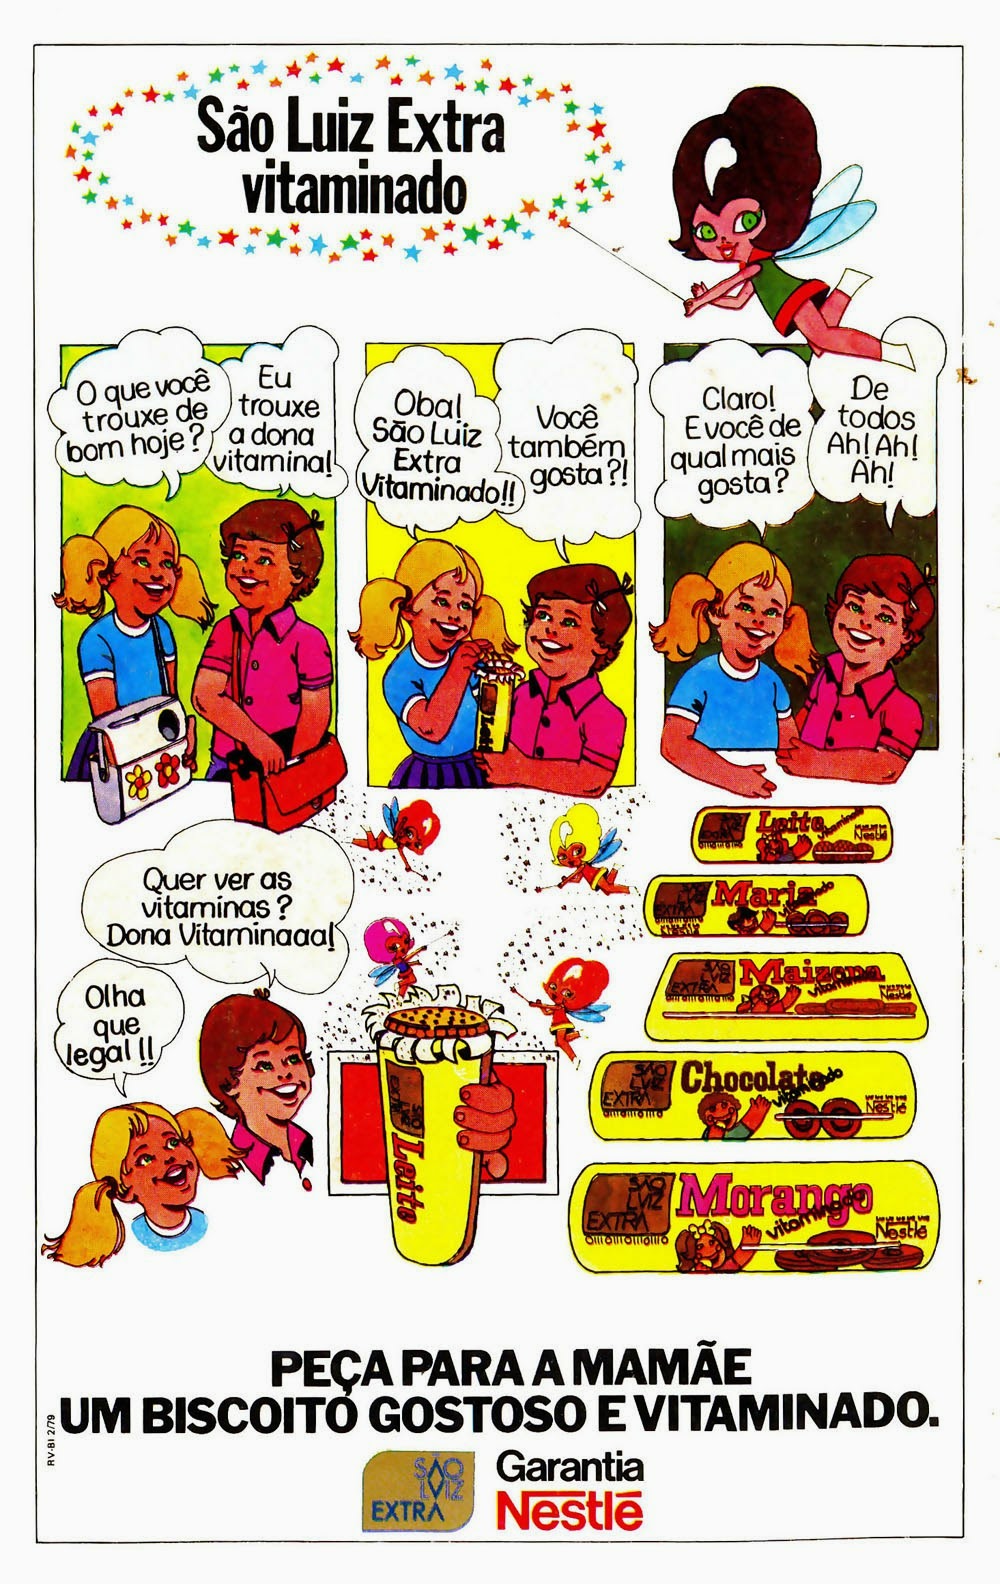 Linha de Biscoitos 'Extra Vitaminado' da São Luiz, apresentada em 1979.